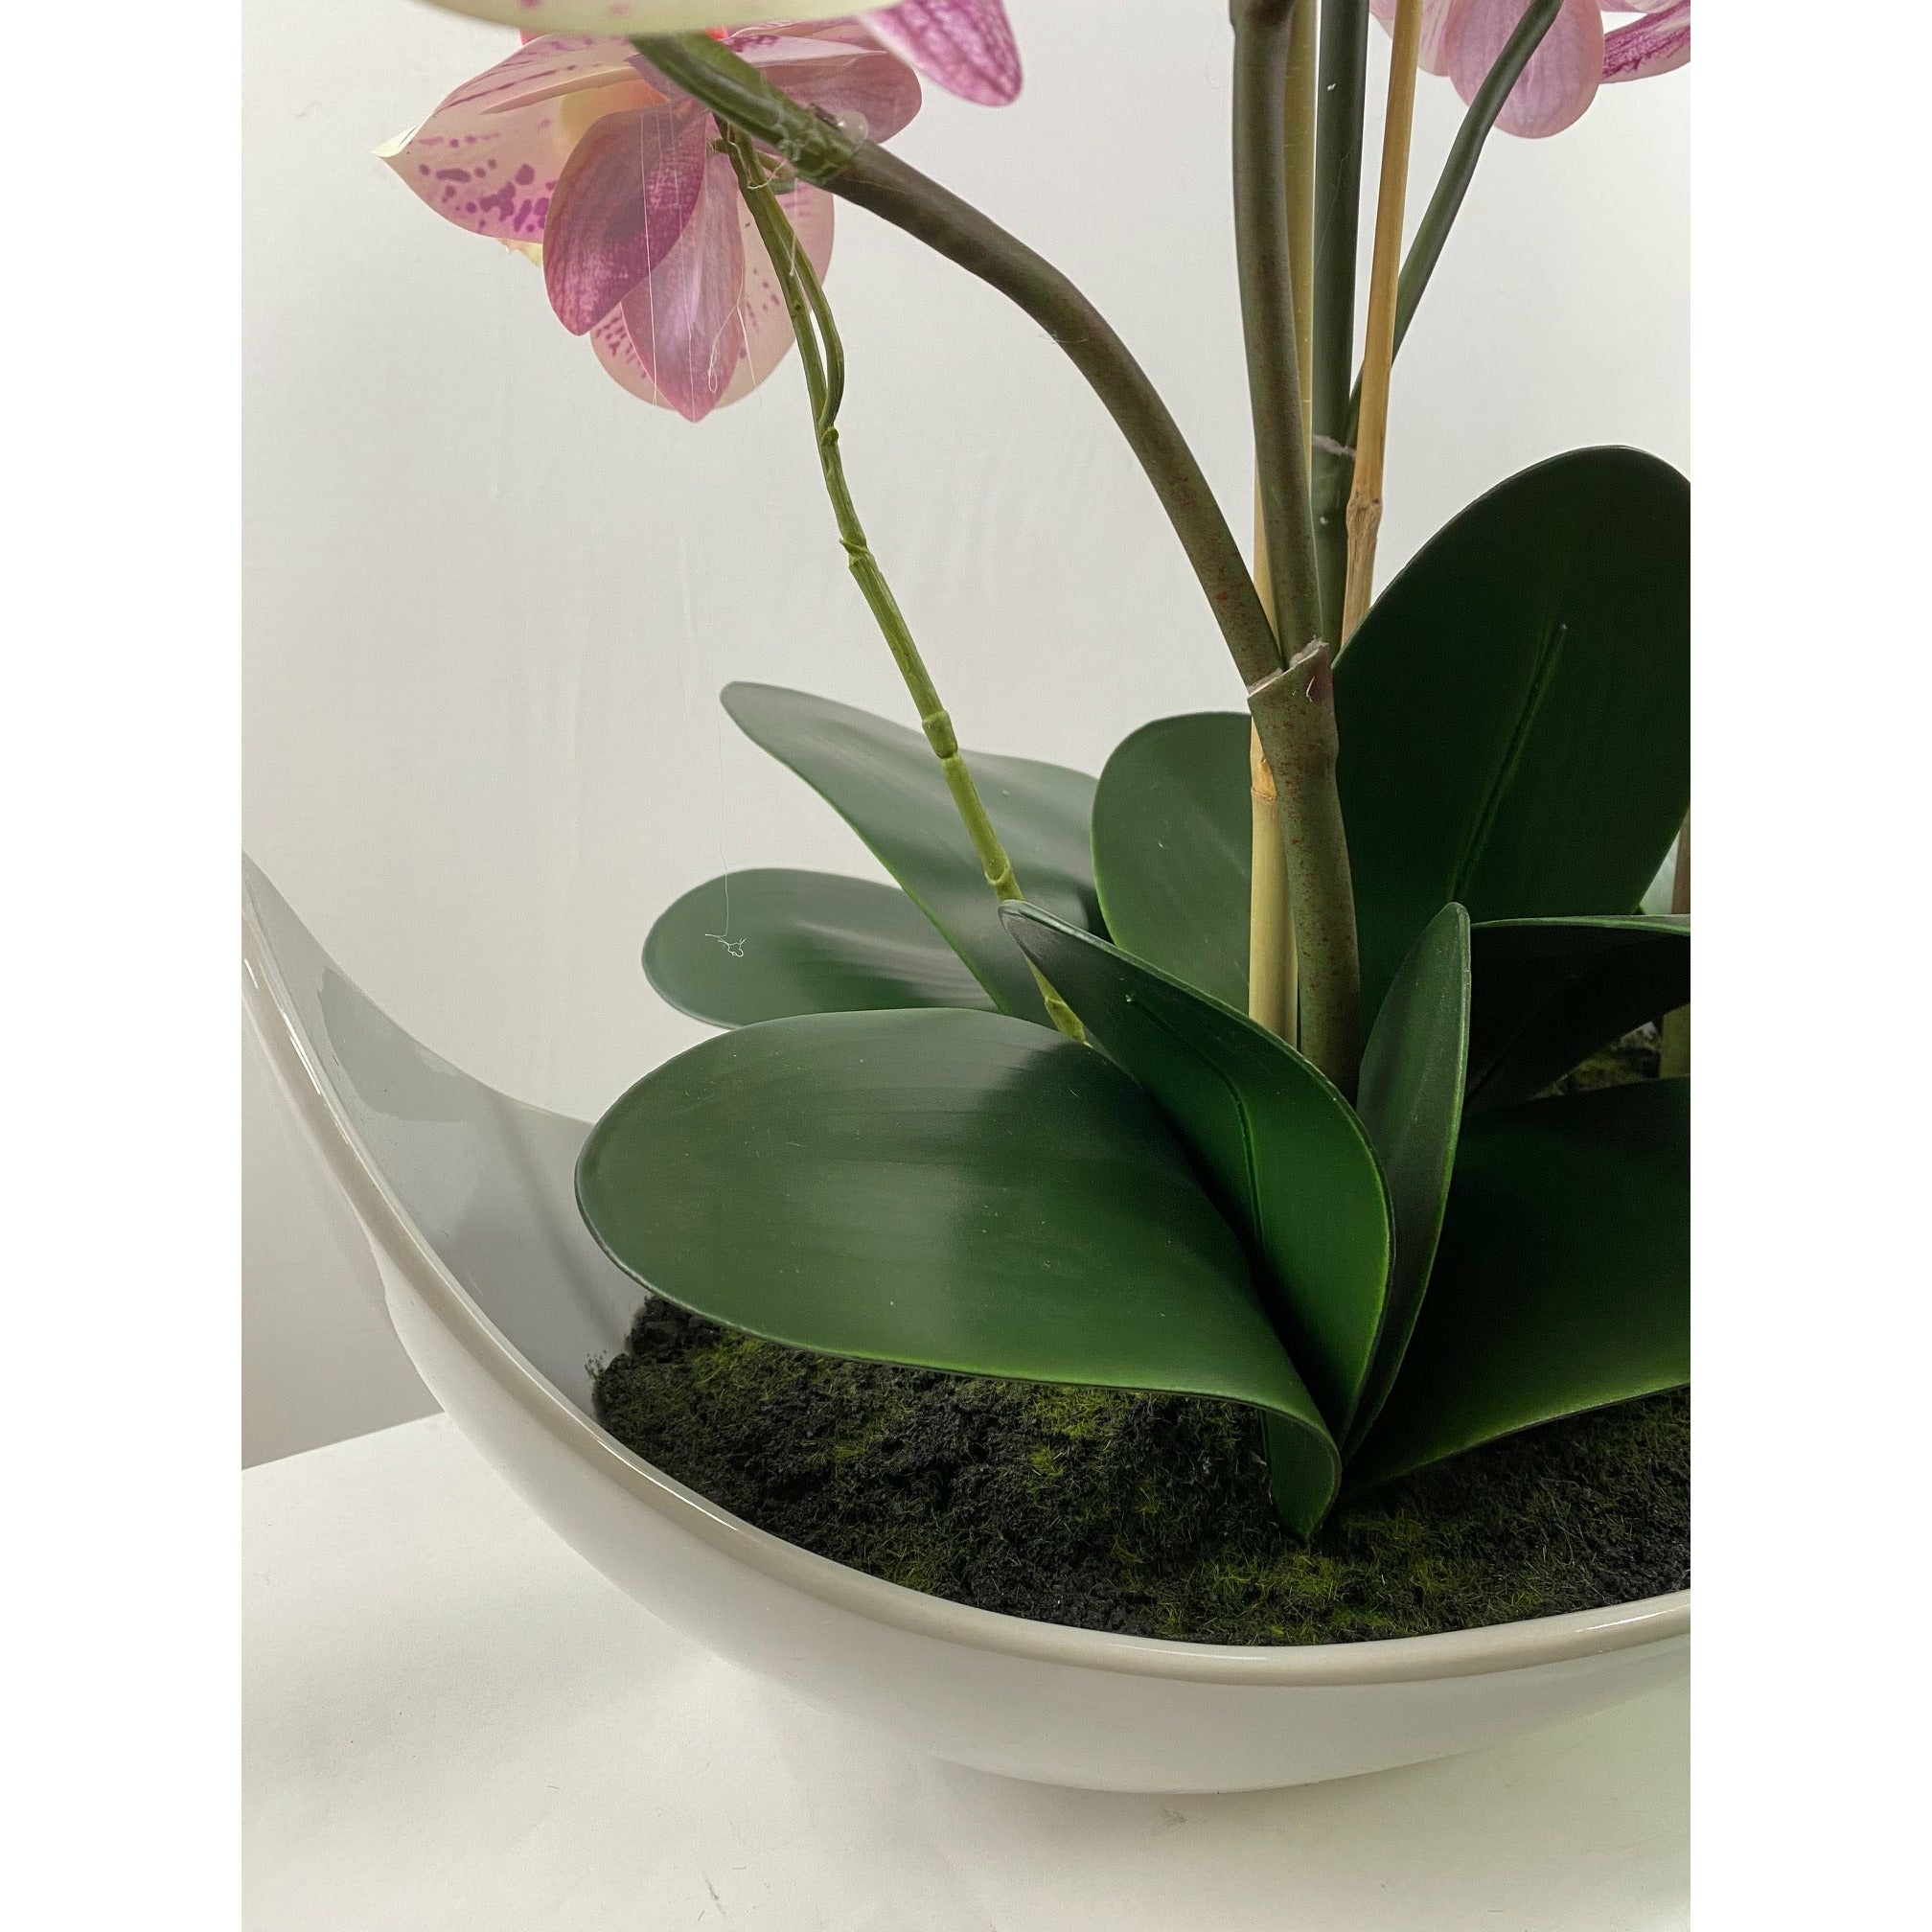 Phalaenopsis orchid x 10 stem in boat ceramic vase